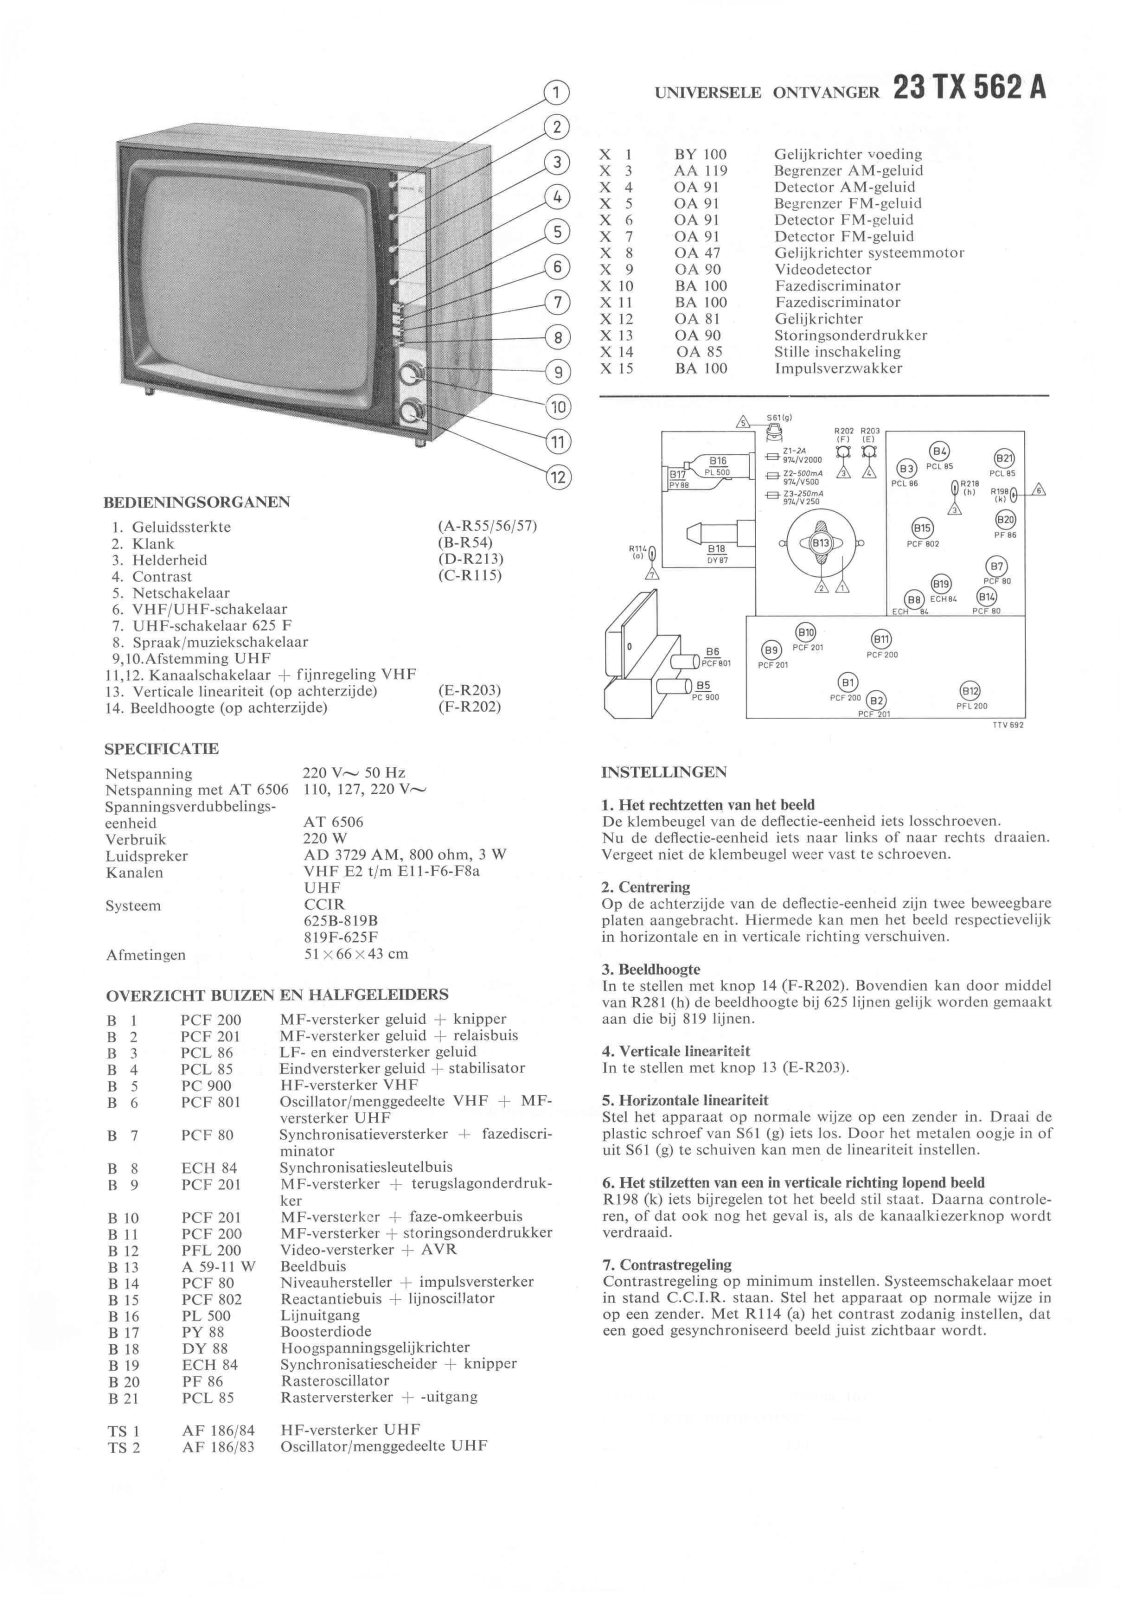 Philips 23TX562A Schematic